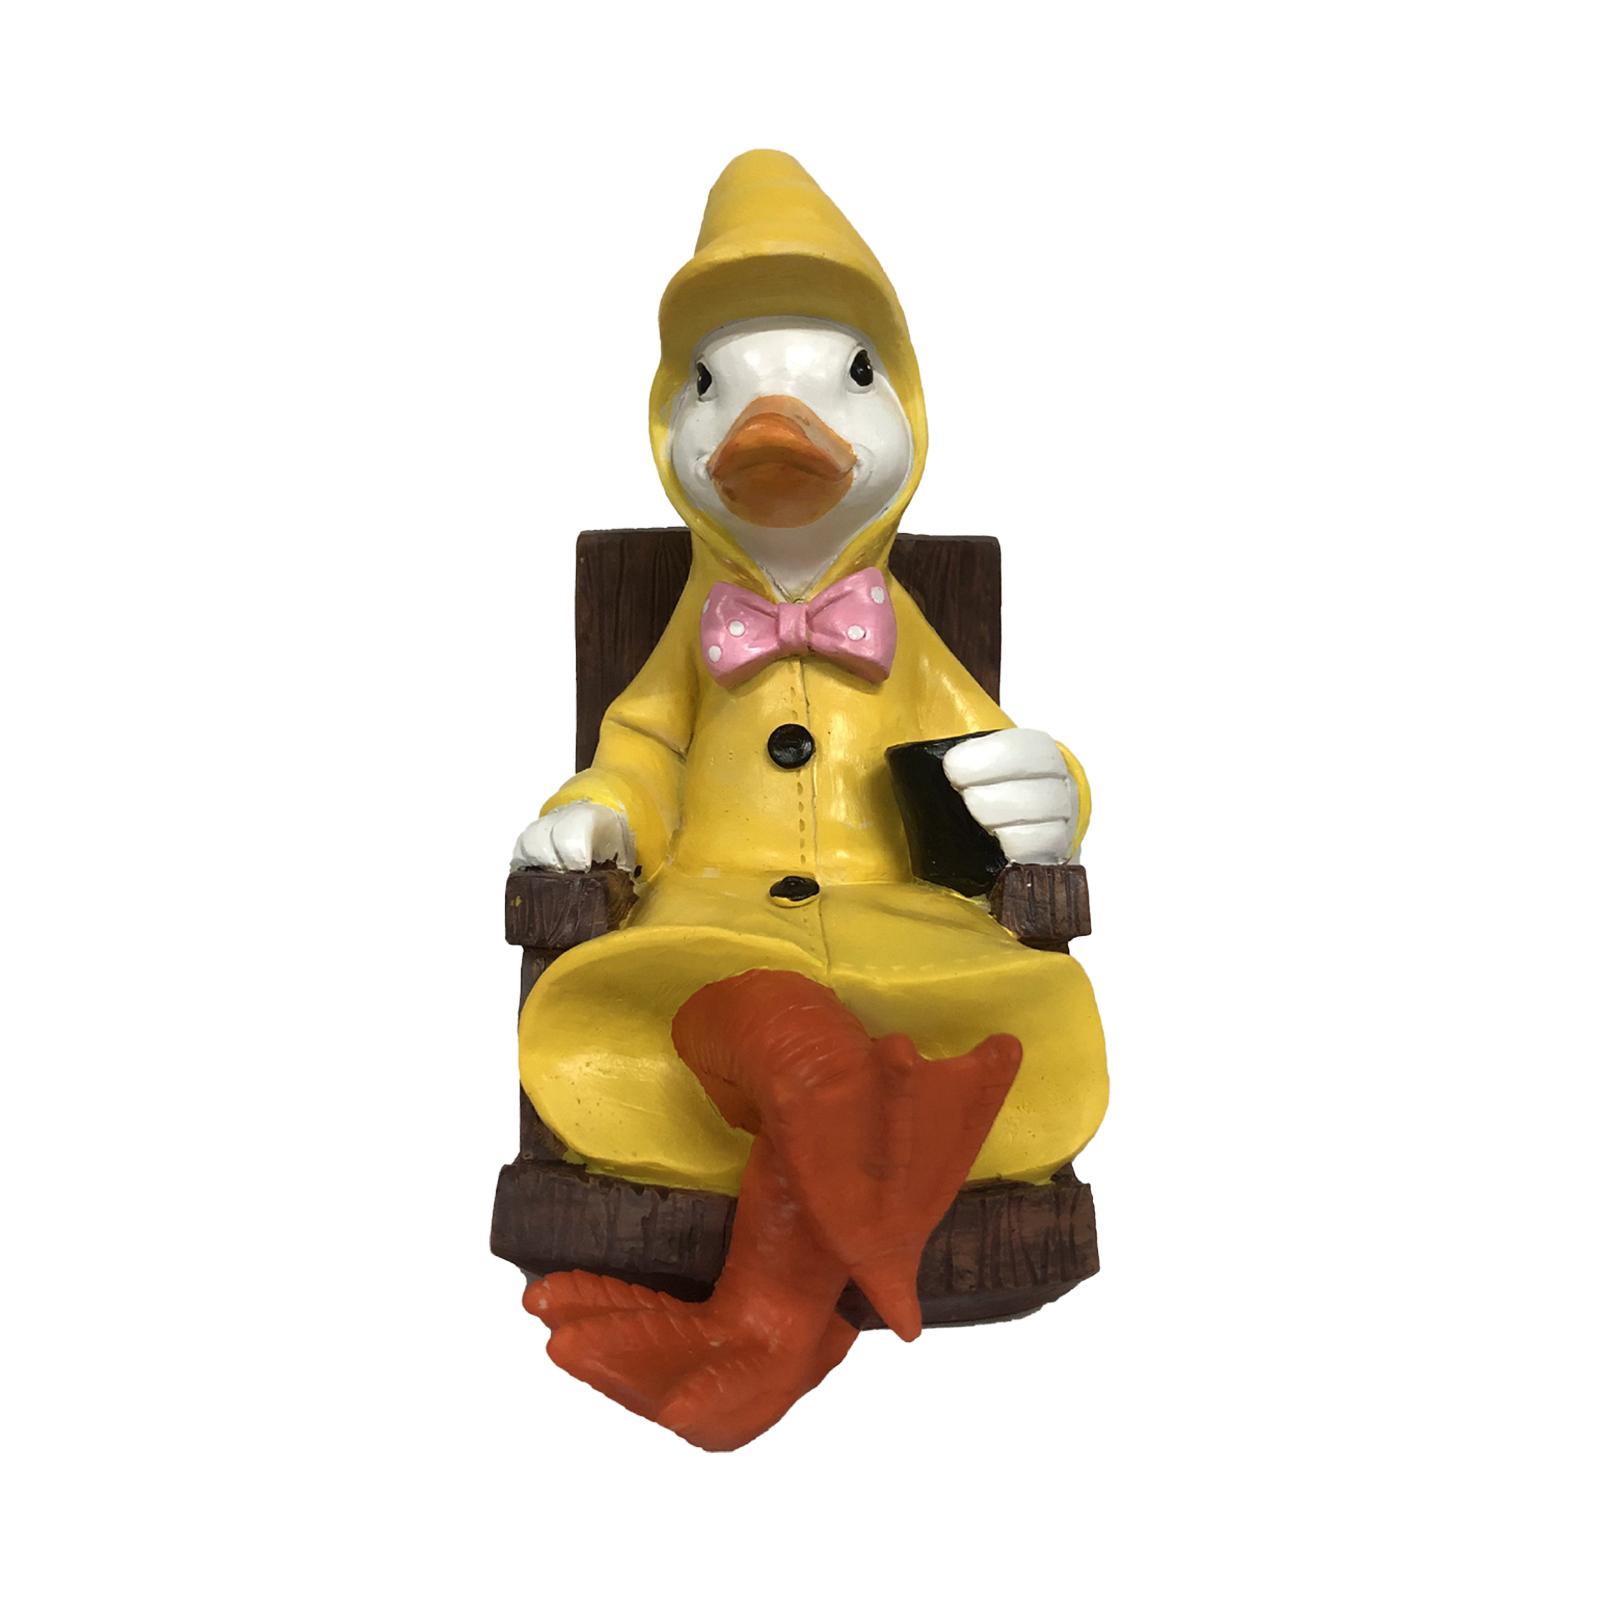 Raincoat Duck Statue Garden Figurine Outdoor Sculpture Seat 18x11.5x21.5cm